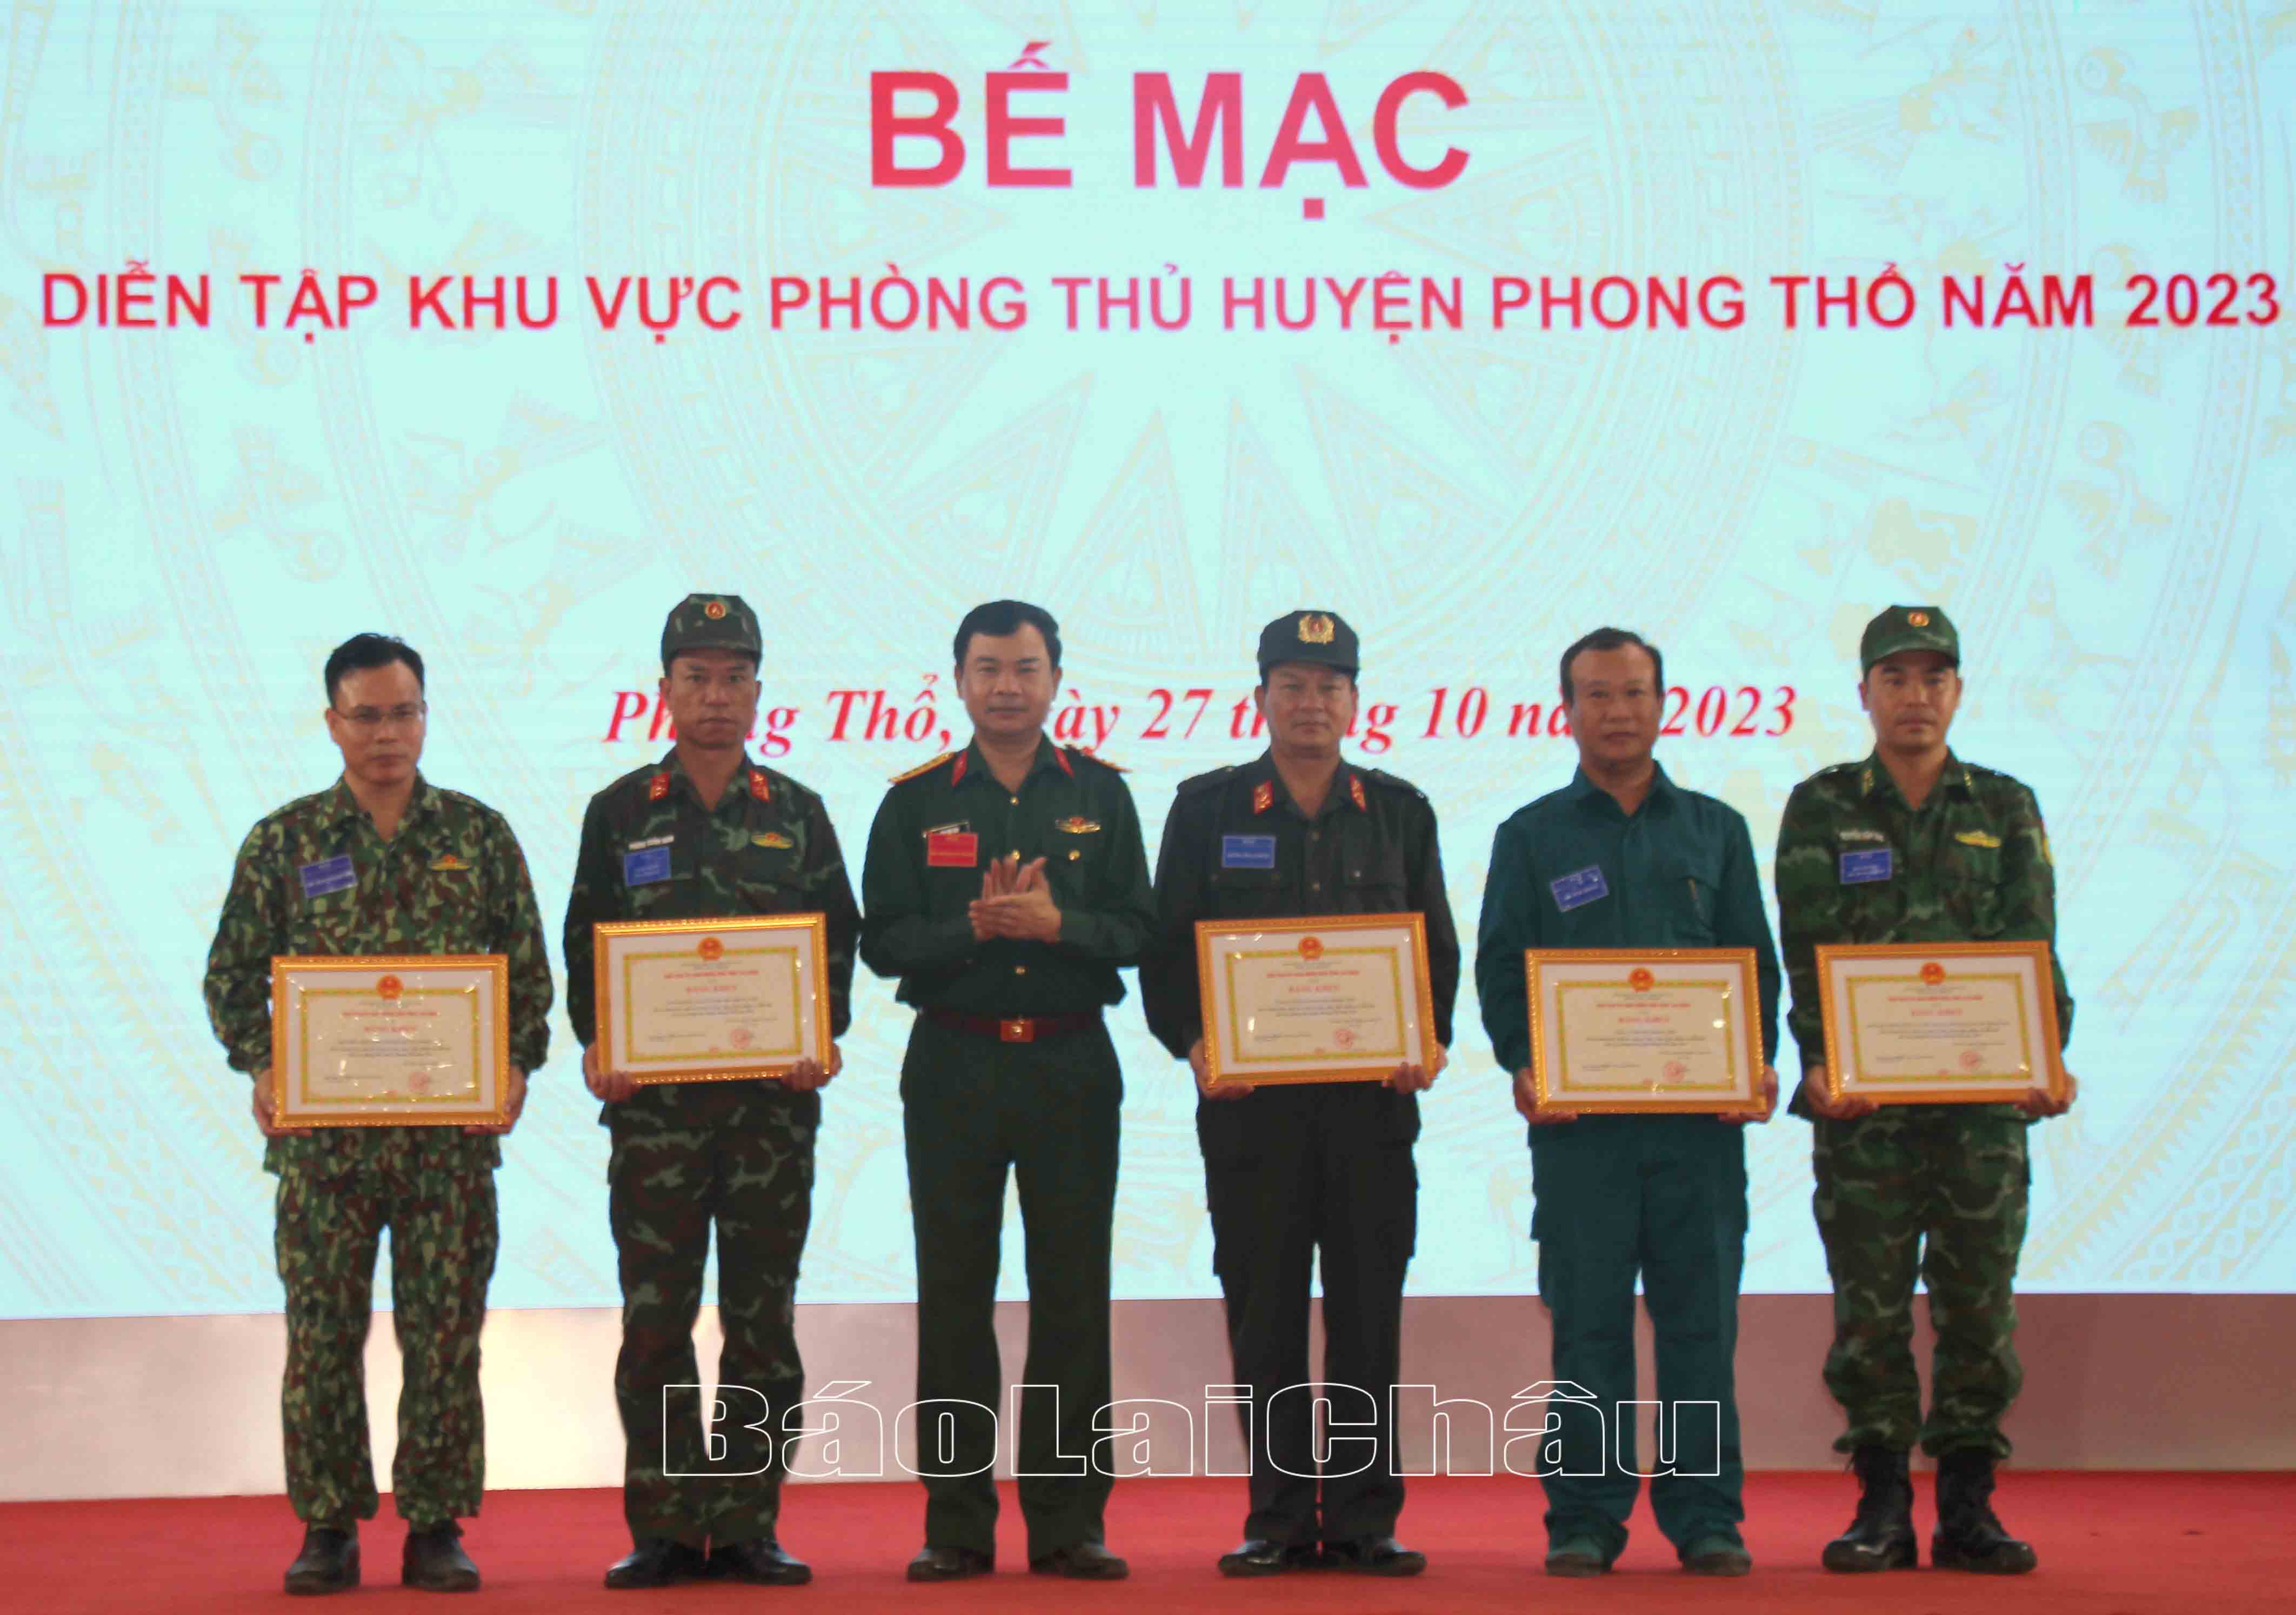 Đại tá Hán Đức Nhu – Ủy viên Ban Thường vụ Tỉnh ủy, Chỉ huy trưởng Bộ Chỉ huy Quân sự tỉnh trao Bằng khen của Chủ tịch UBND tỉnh cho các tập thể đã có thành tích xuất sắc trong tổ chức, thực hiện nhiệm vụ diễn tập KVPT huyện Phong Thổ năm 2023.